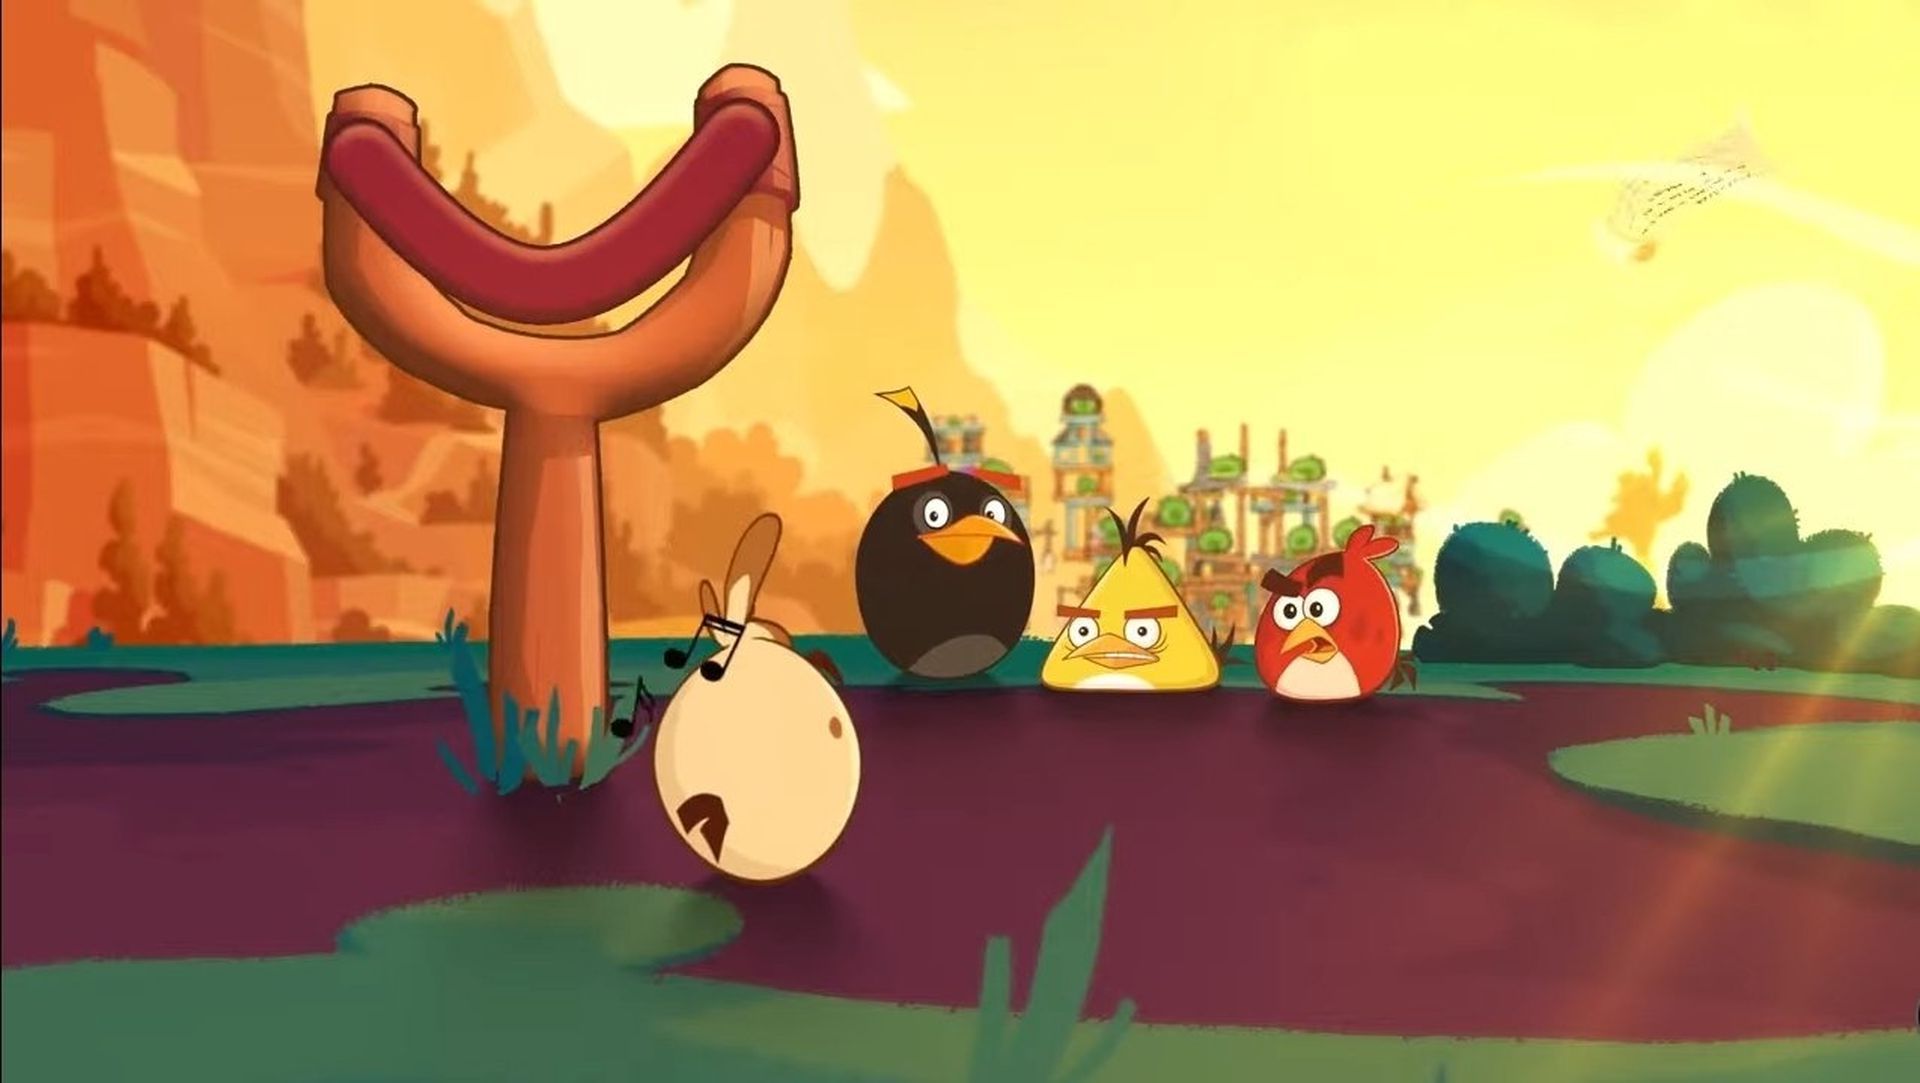 Melody, un nuovo uccello protagonista con abilità musicali eccezionali, si è unito ad Angry Birds 2. Ti starai chiedendo come sbloccare Melody in Angry Birds 2....